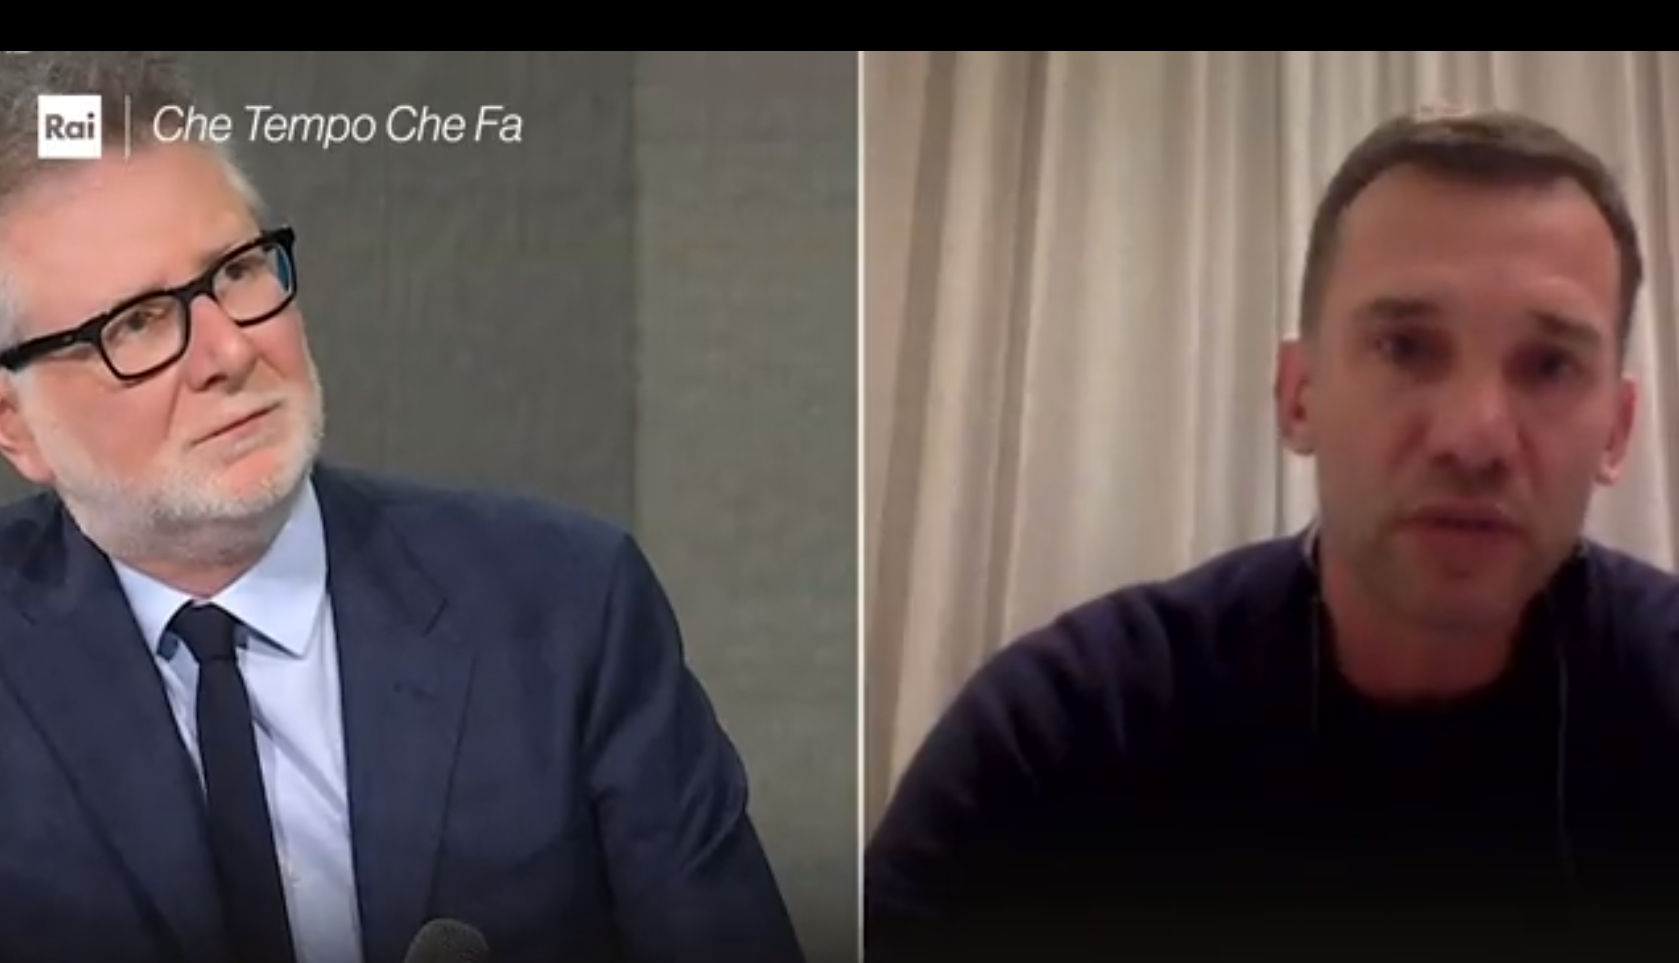 "Хочу проснуться, но это реальность": Шевченко не смог сдержать слез в эфире итальянского ТВ, говоря об Украине